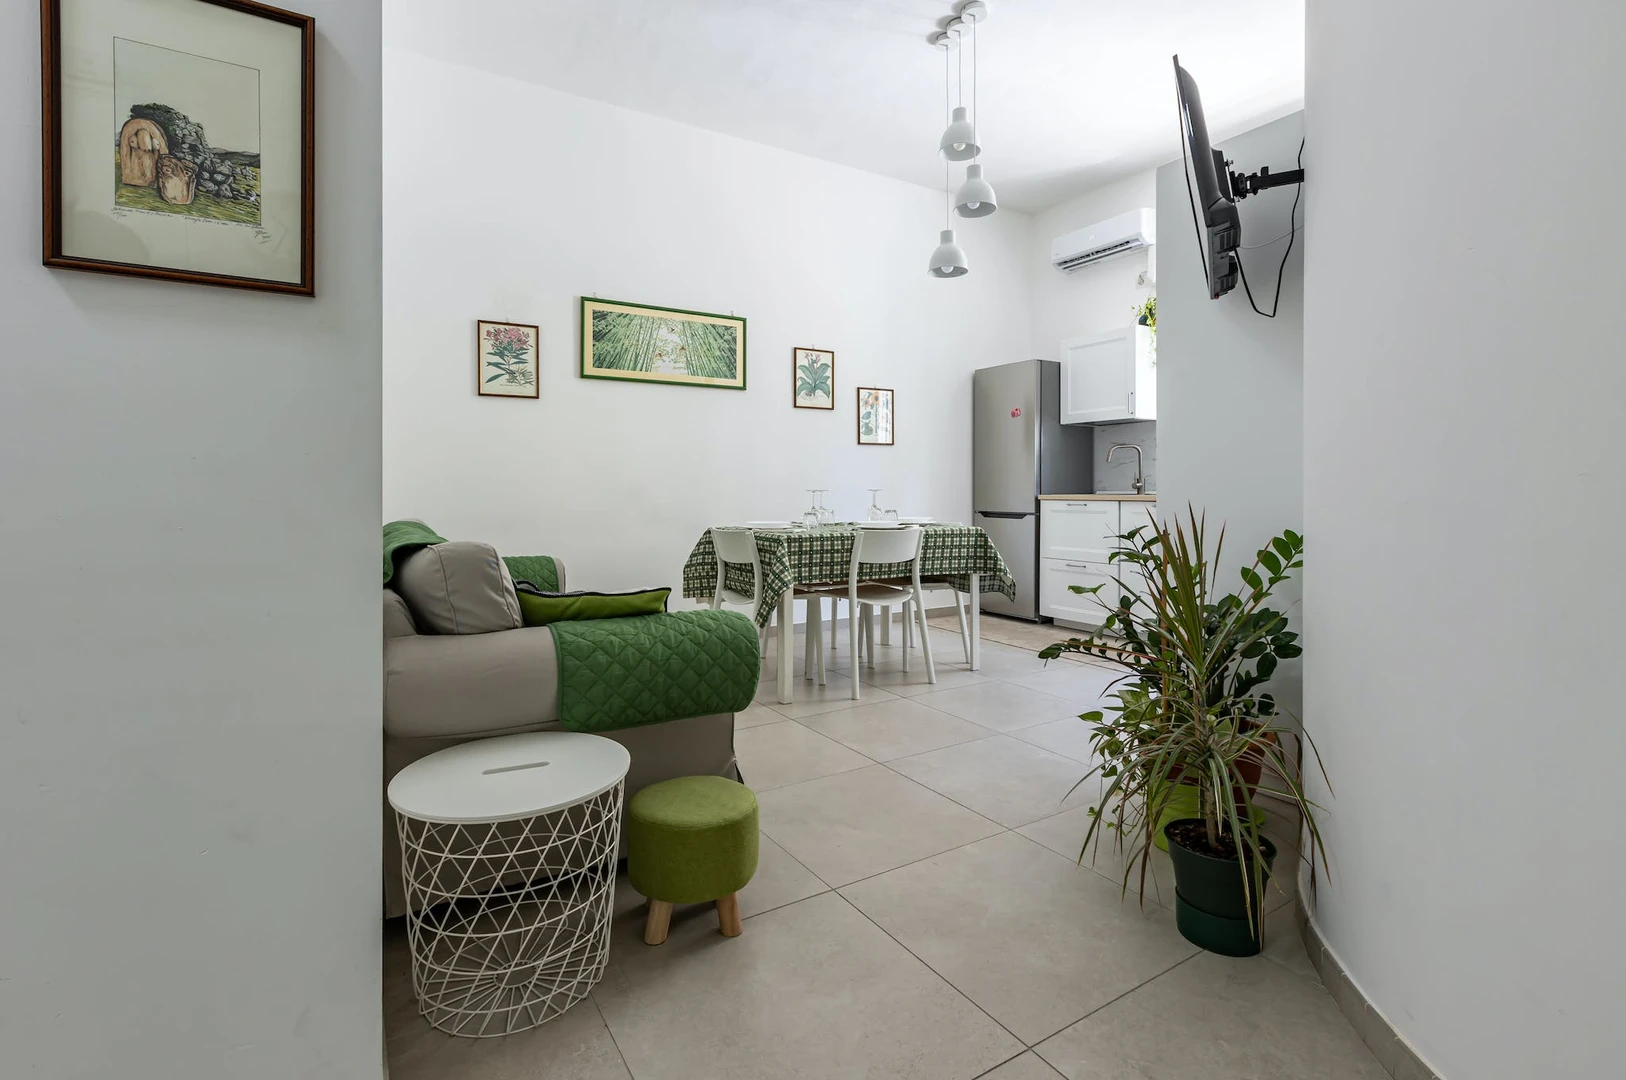 Two bedroom accommodation in Casteddu/cagliari